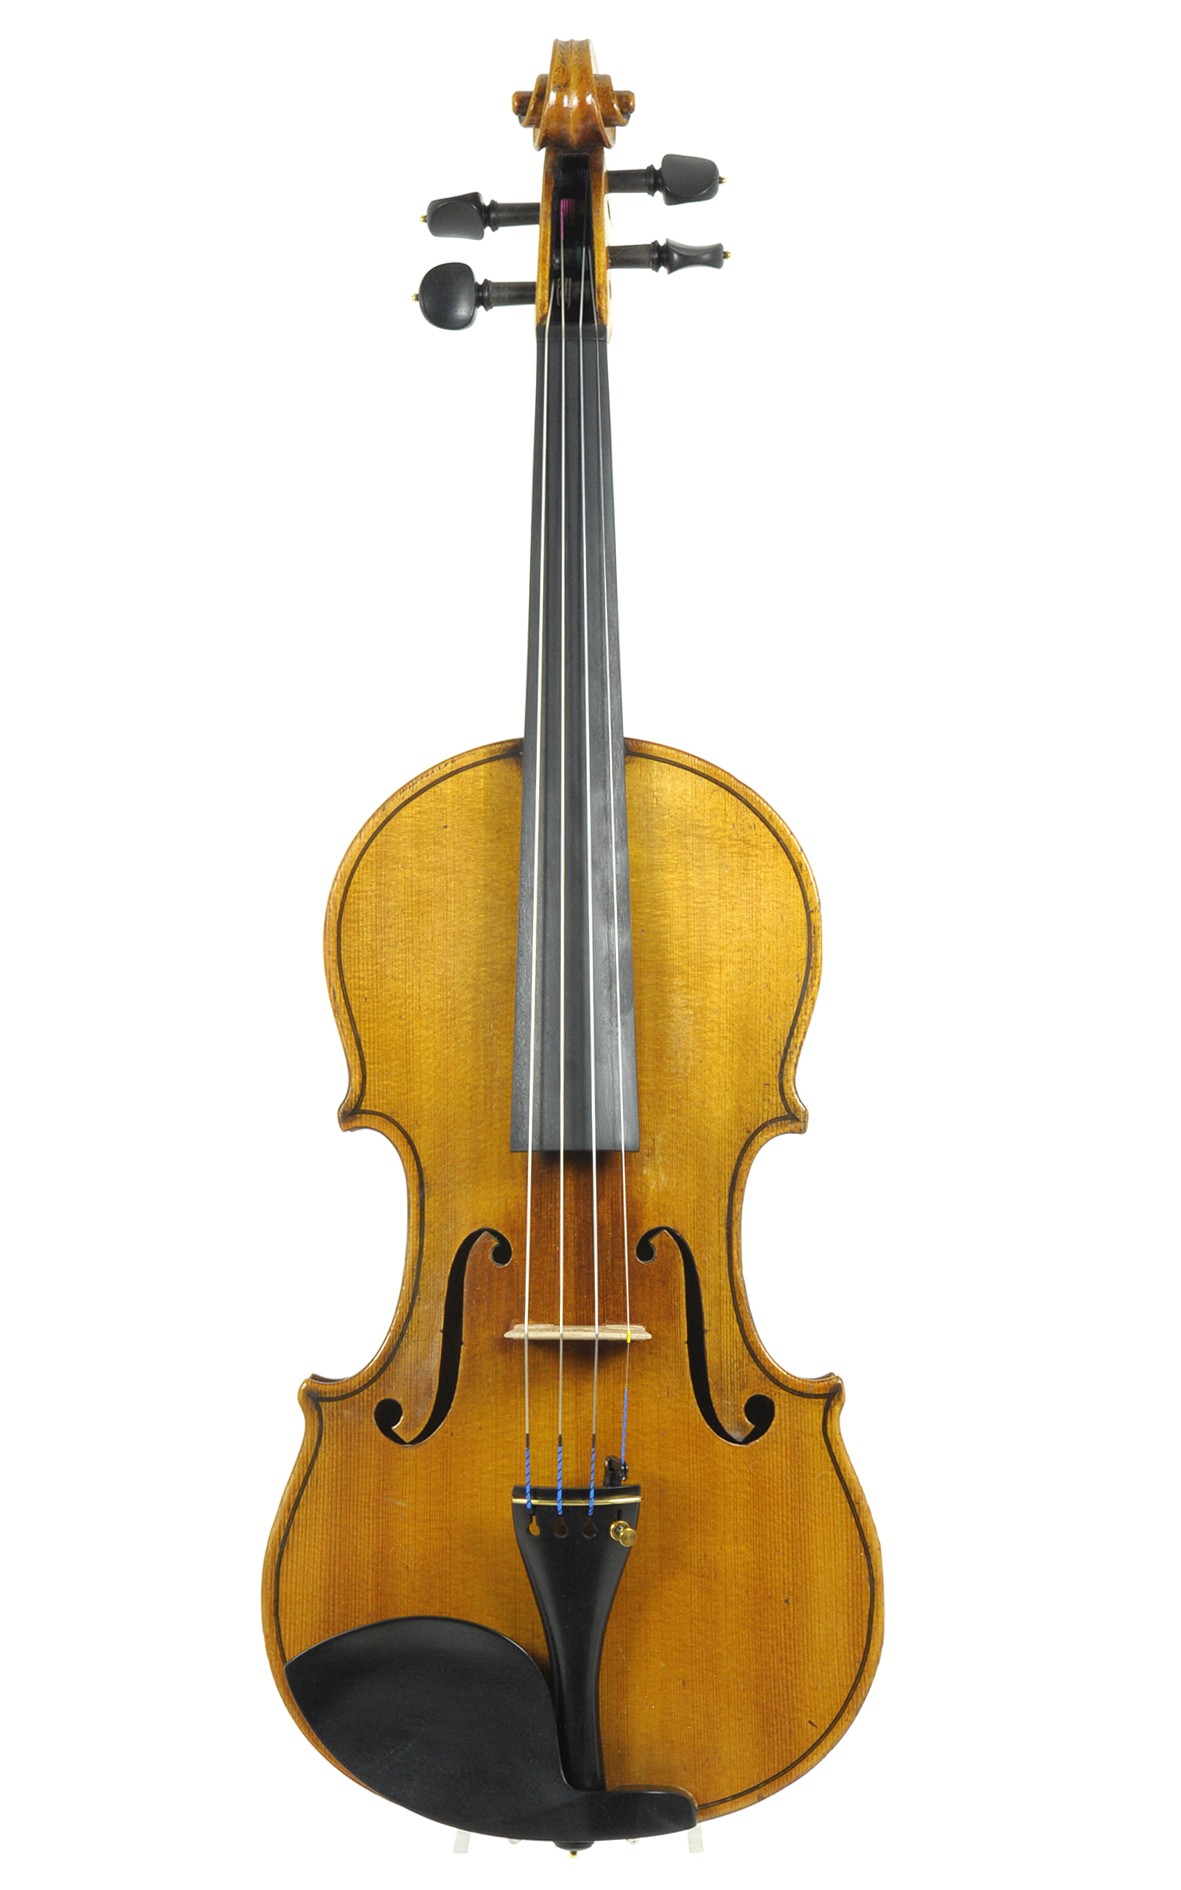 Markneukirchen violin, Stradivari model, ca. 1930 - top